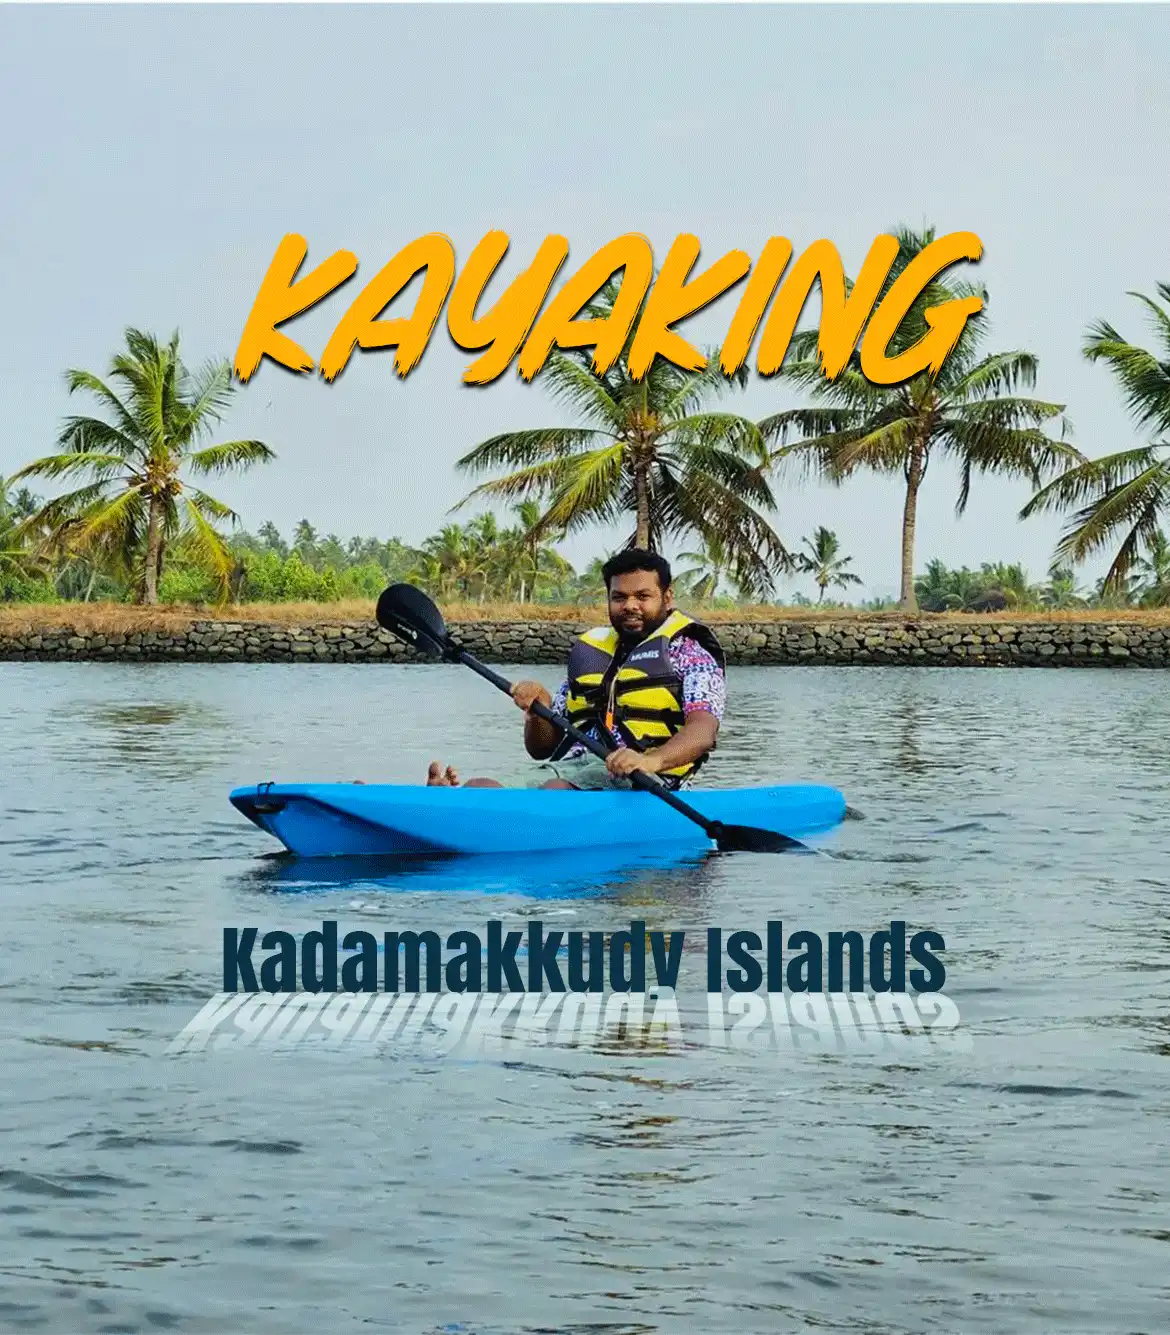 Kadamakkudy Islands Kayaking near Kochi